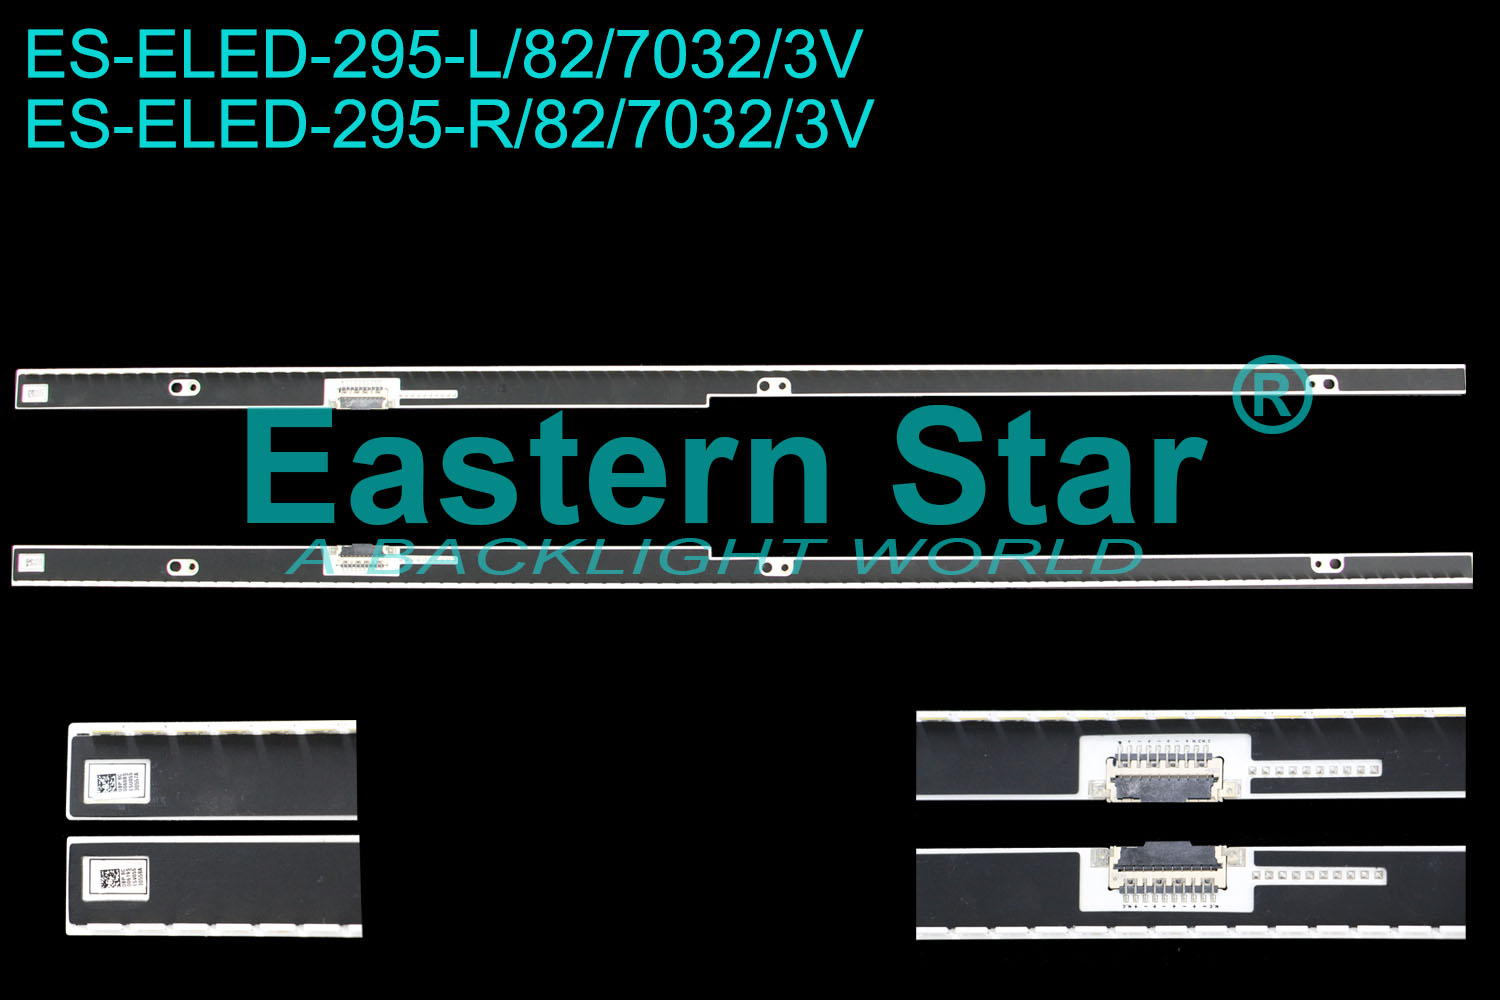 ES-ELED-295 ELED/EDGE TV backlight use for SAMSUNG 55'' TV LH55UEDPLGC/ZA/UN55H7150AFXZA SAMSUNG_2014SVS55_7032SNB_H7000_L/R82_REV1.0_131209 LED STRIPS(2)